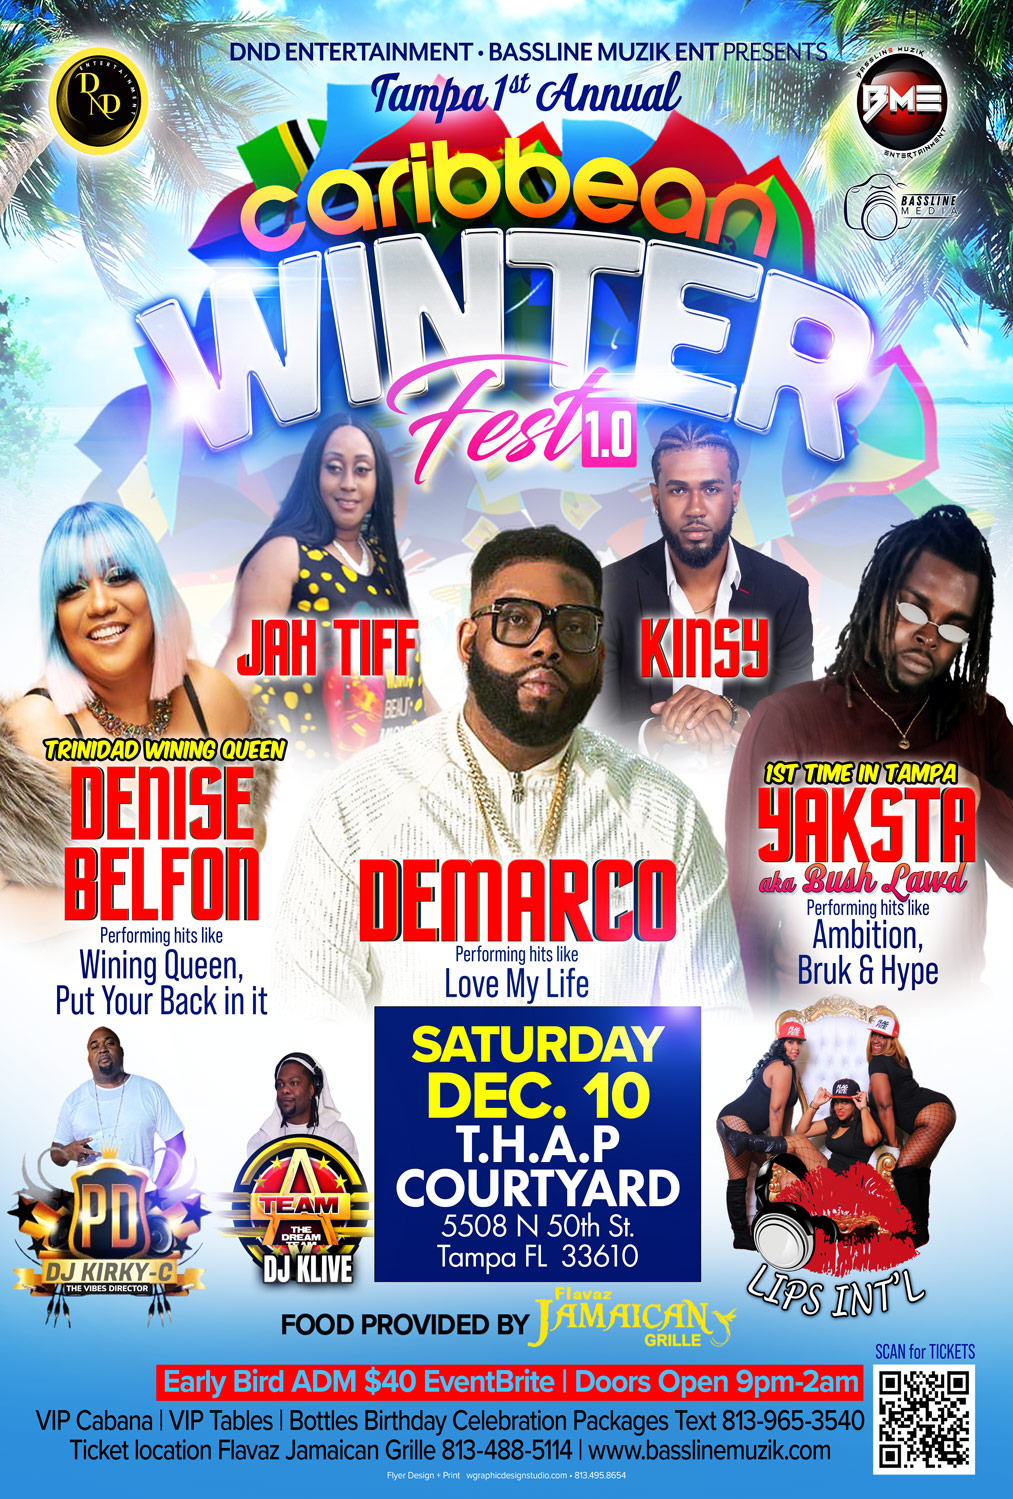 Caribbean Winter Fest 1.0 -demarco, Denise Belfon & Yaksta